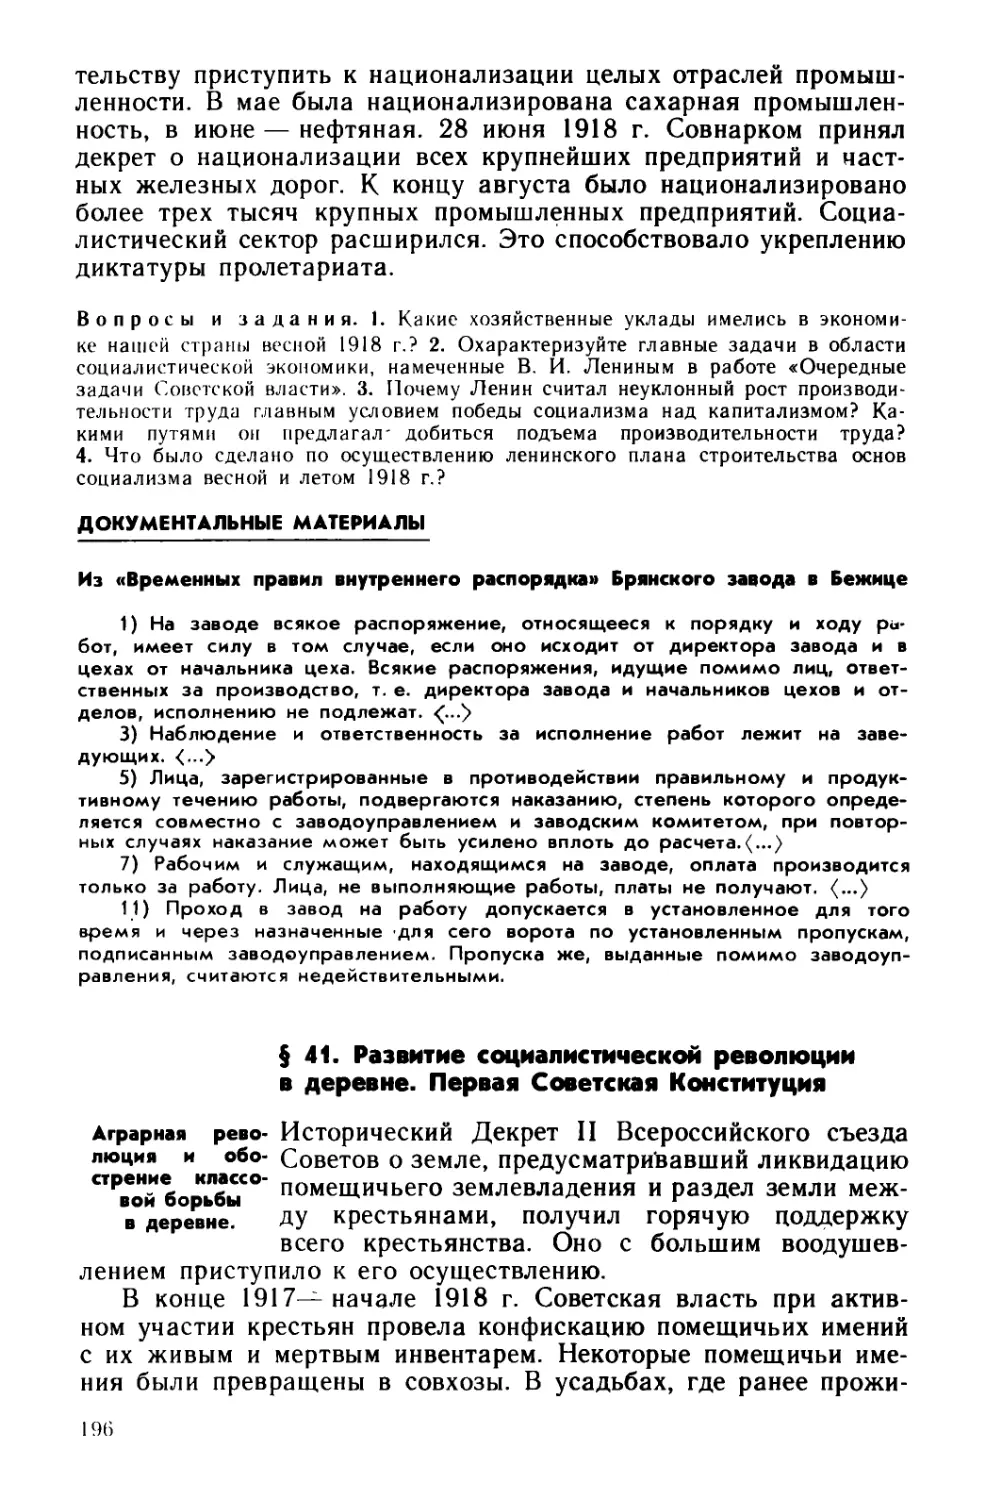 § 41. Развитие социалистической революции в деревне. Первая Советская Конституция